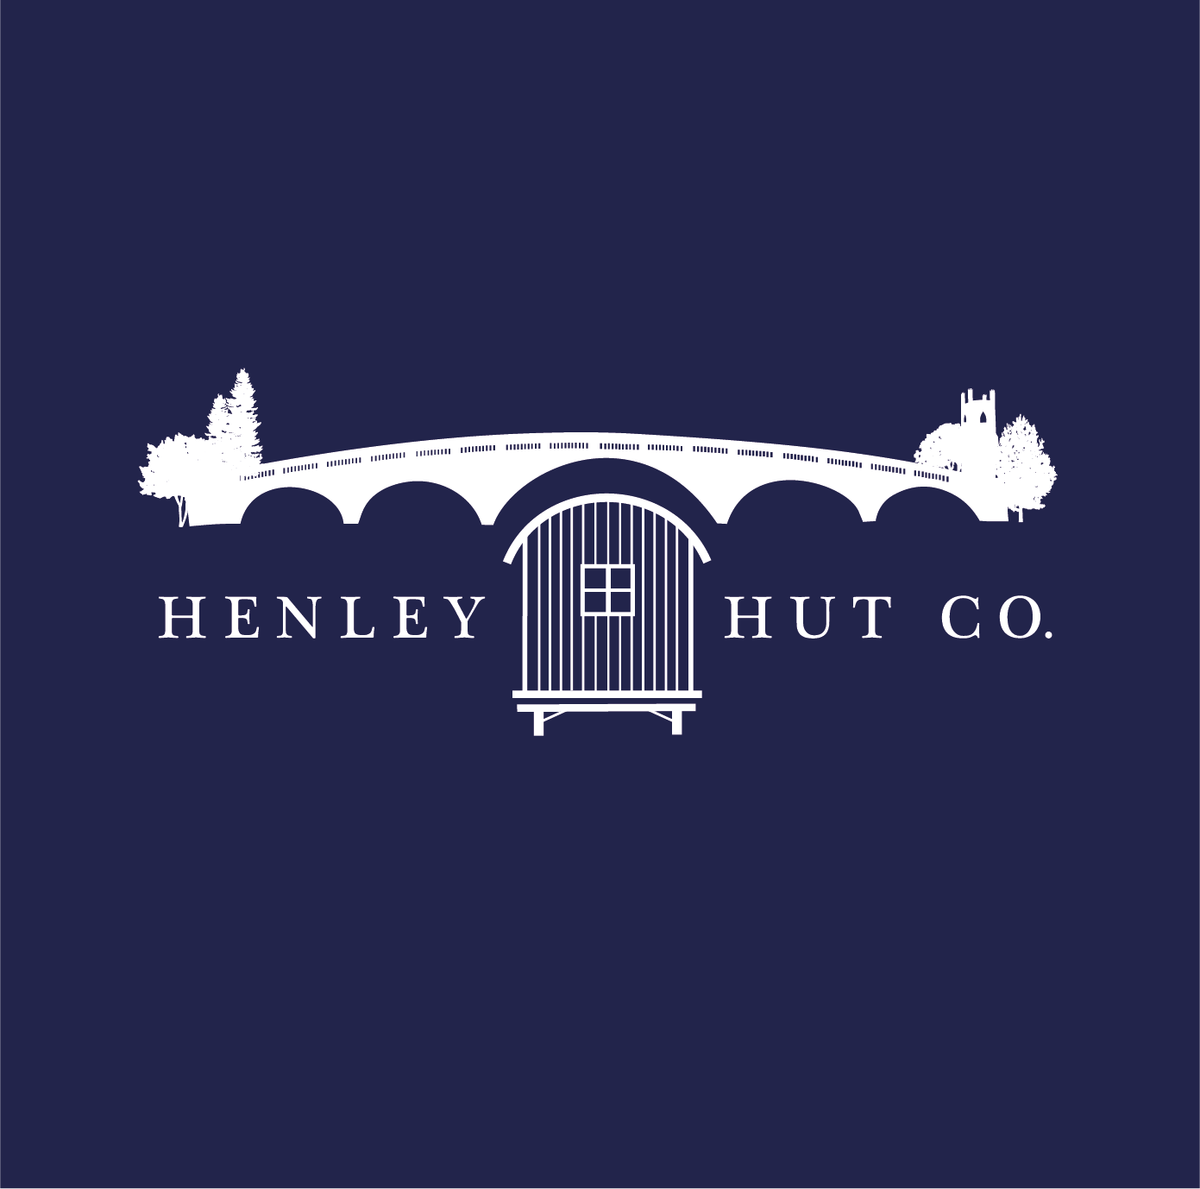 Henley Hut Co.